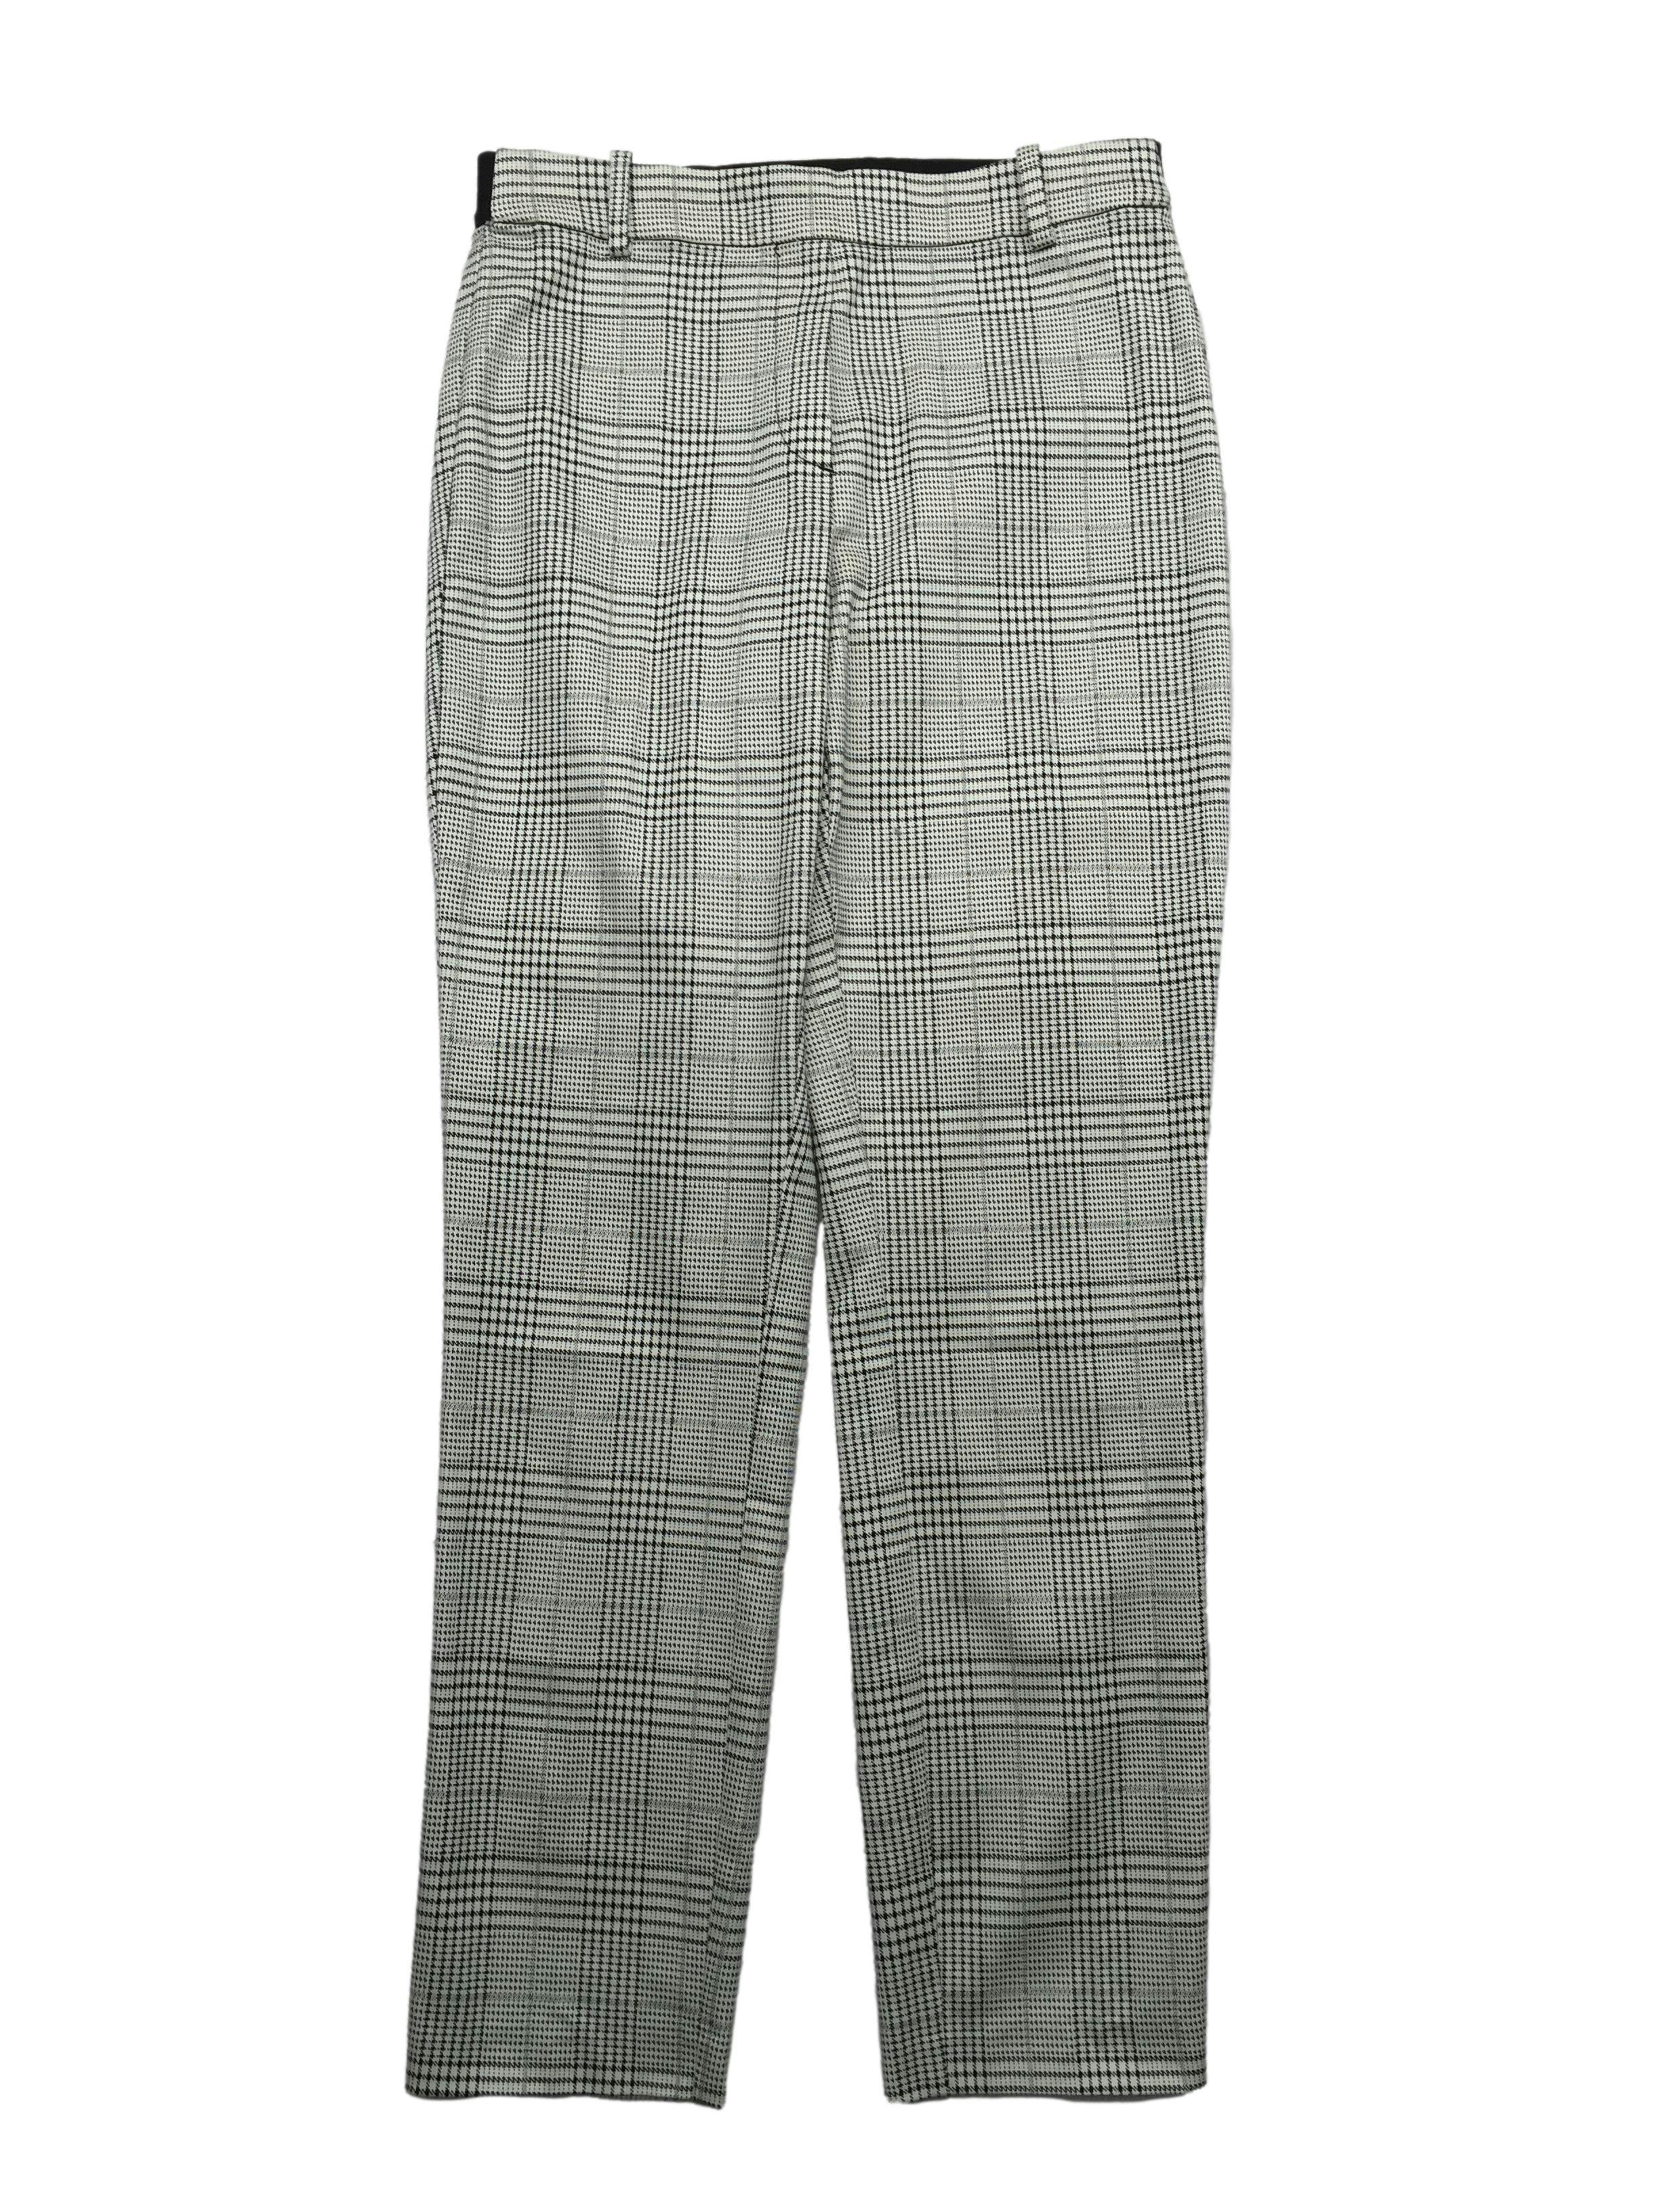 Pantalón slim fit H&M príncipe de gales blanco y negro, parte posterior con pretina elástica y falsos bolsillos. Cintura 70cm, Largo 93cm.